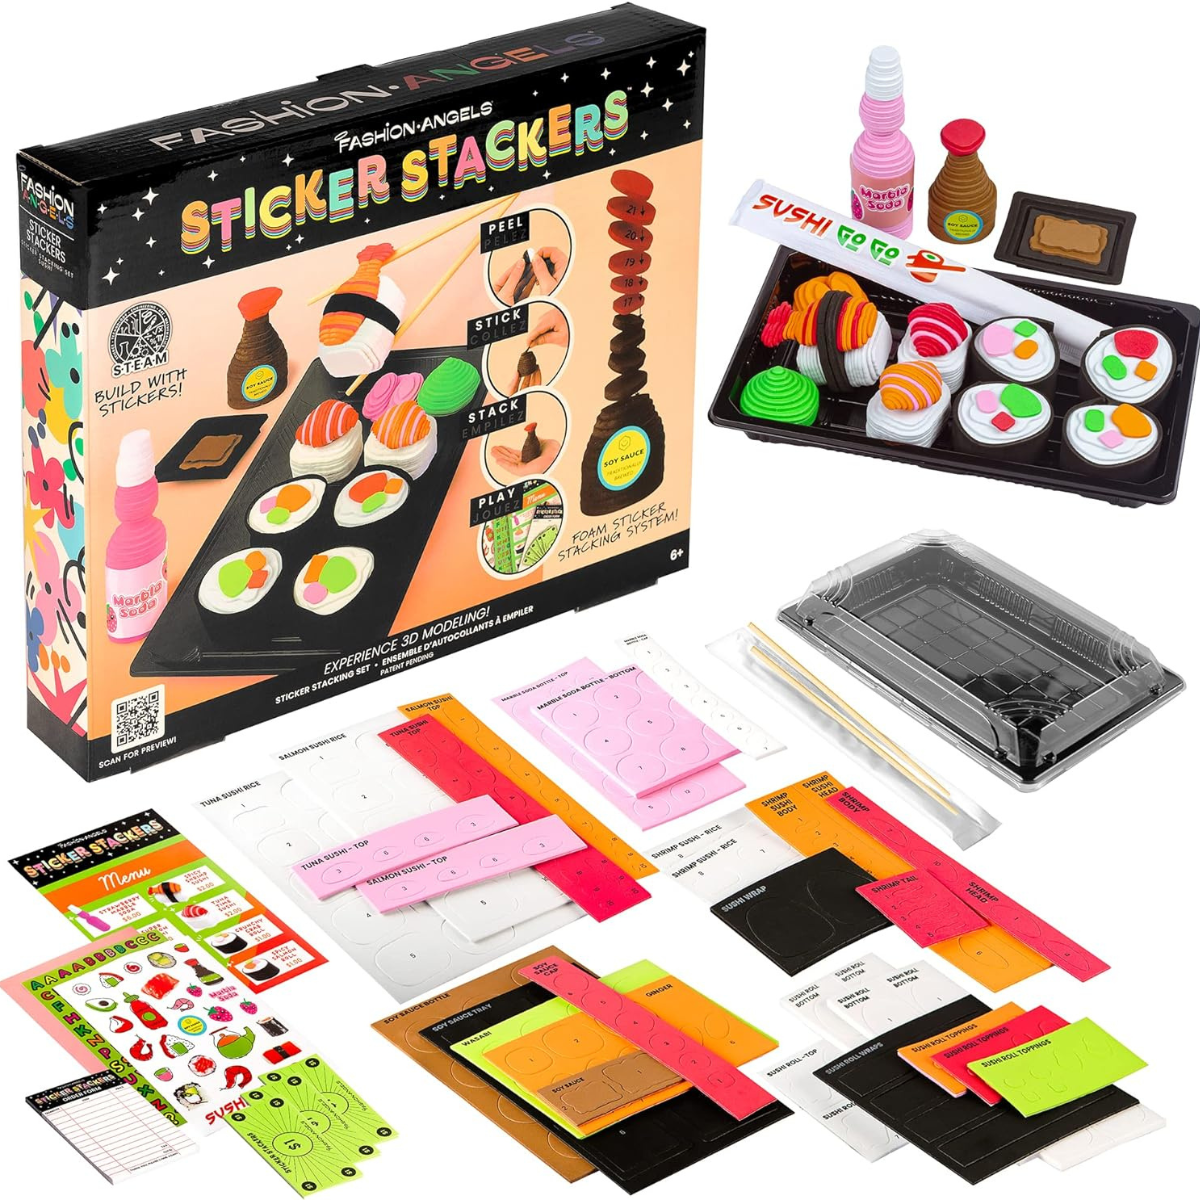 Fashion angels - sticker stackers set sushi, adesivi in ​​schiuma per creare in 3d, cibo giocattolo per bambini, gioco stem, attività creativa, da 8 anni, f13194 - CRAYOLA